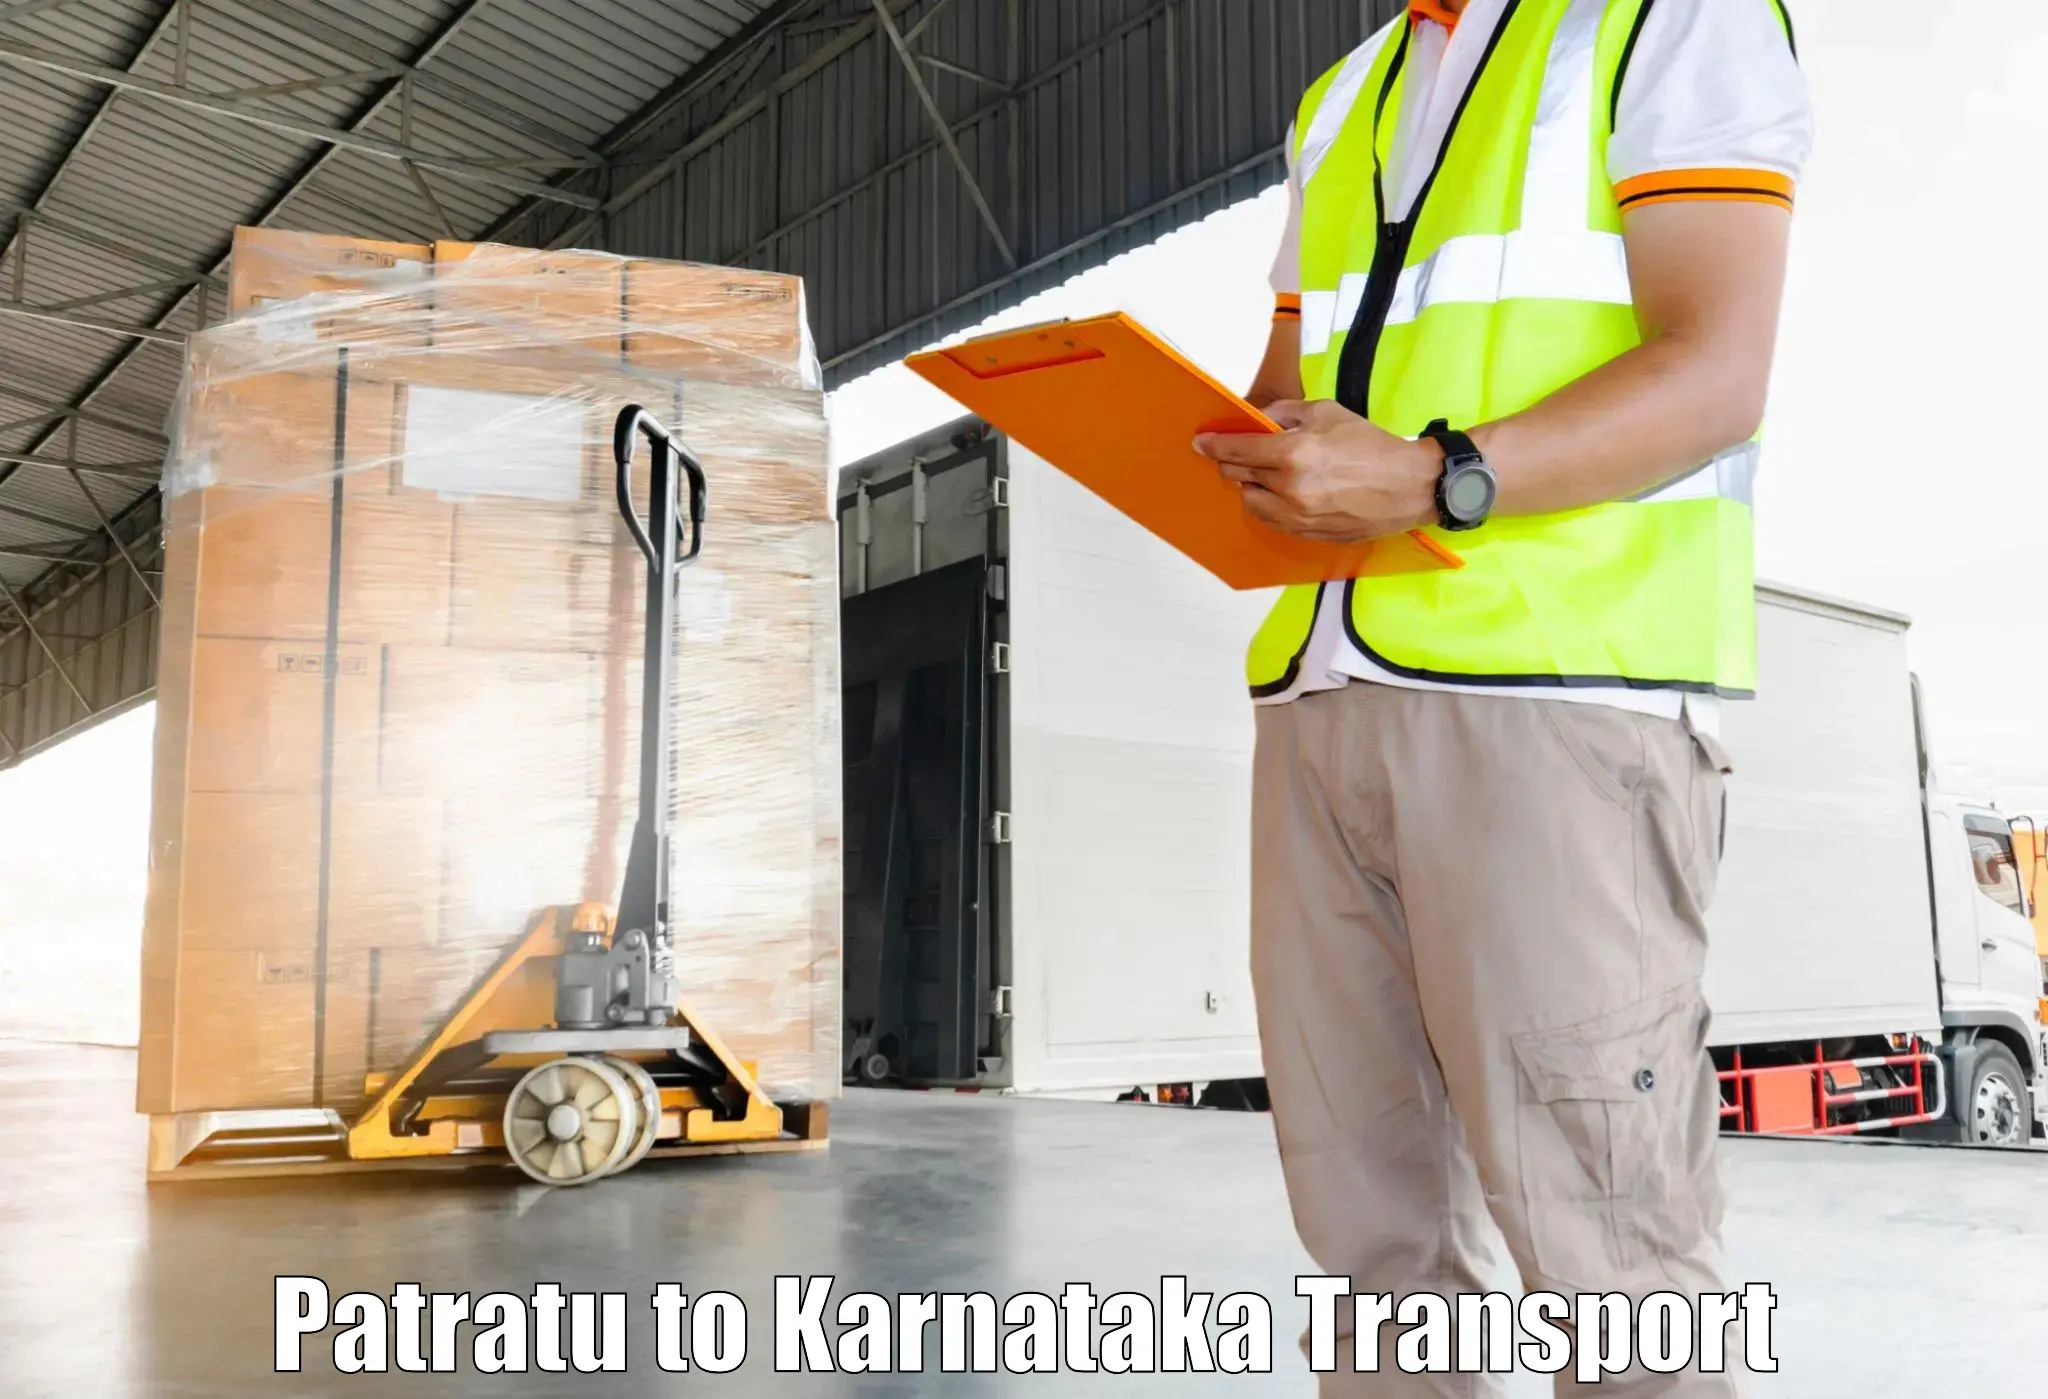 Truck transport companies in India Patratu to Mudhol